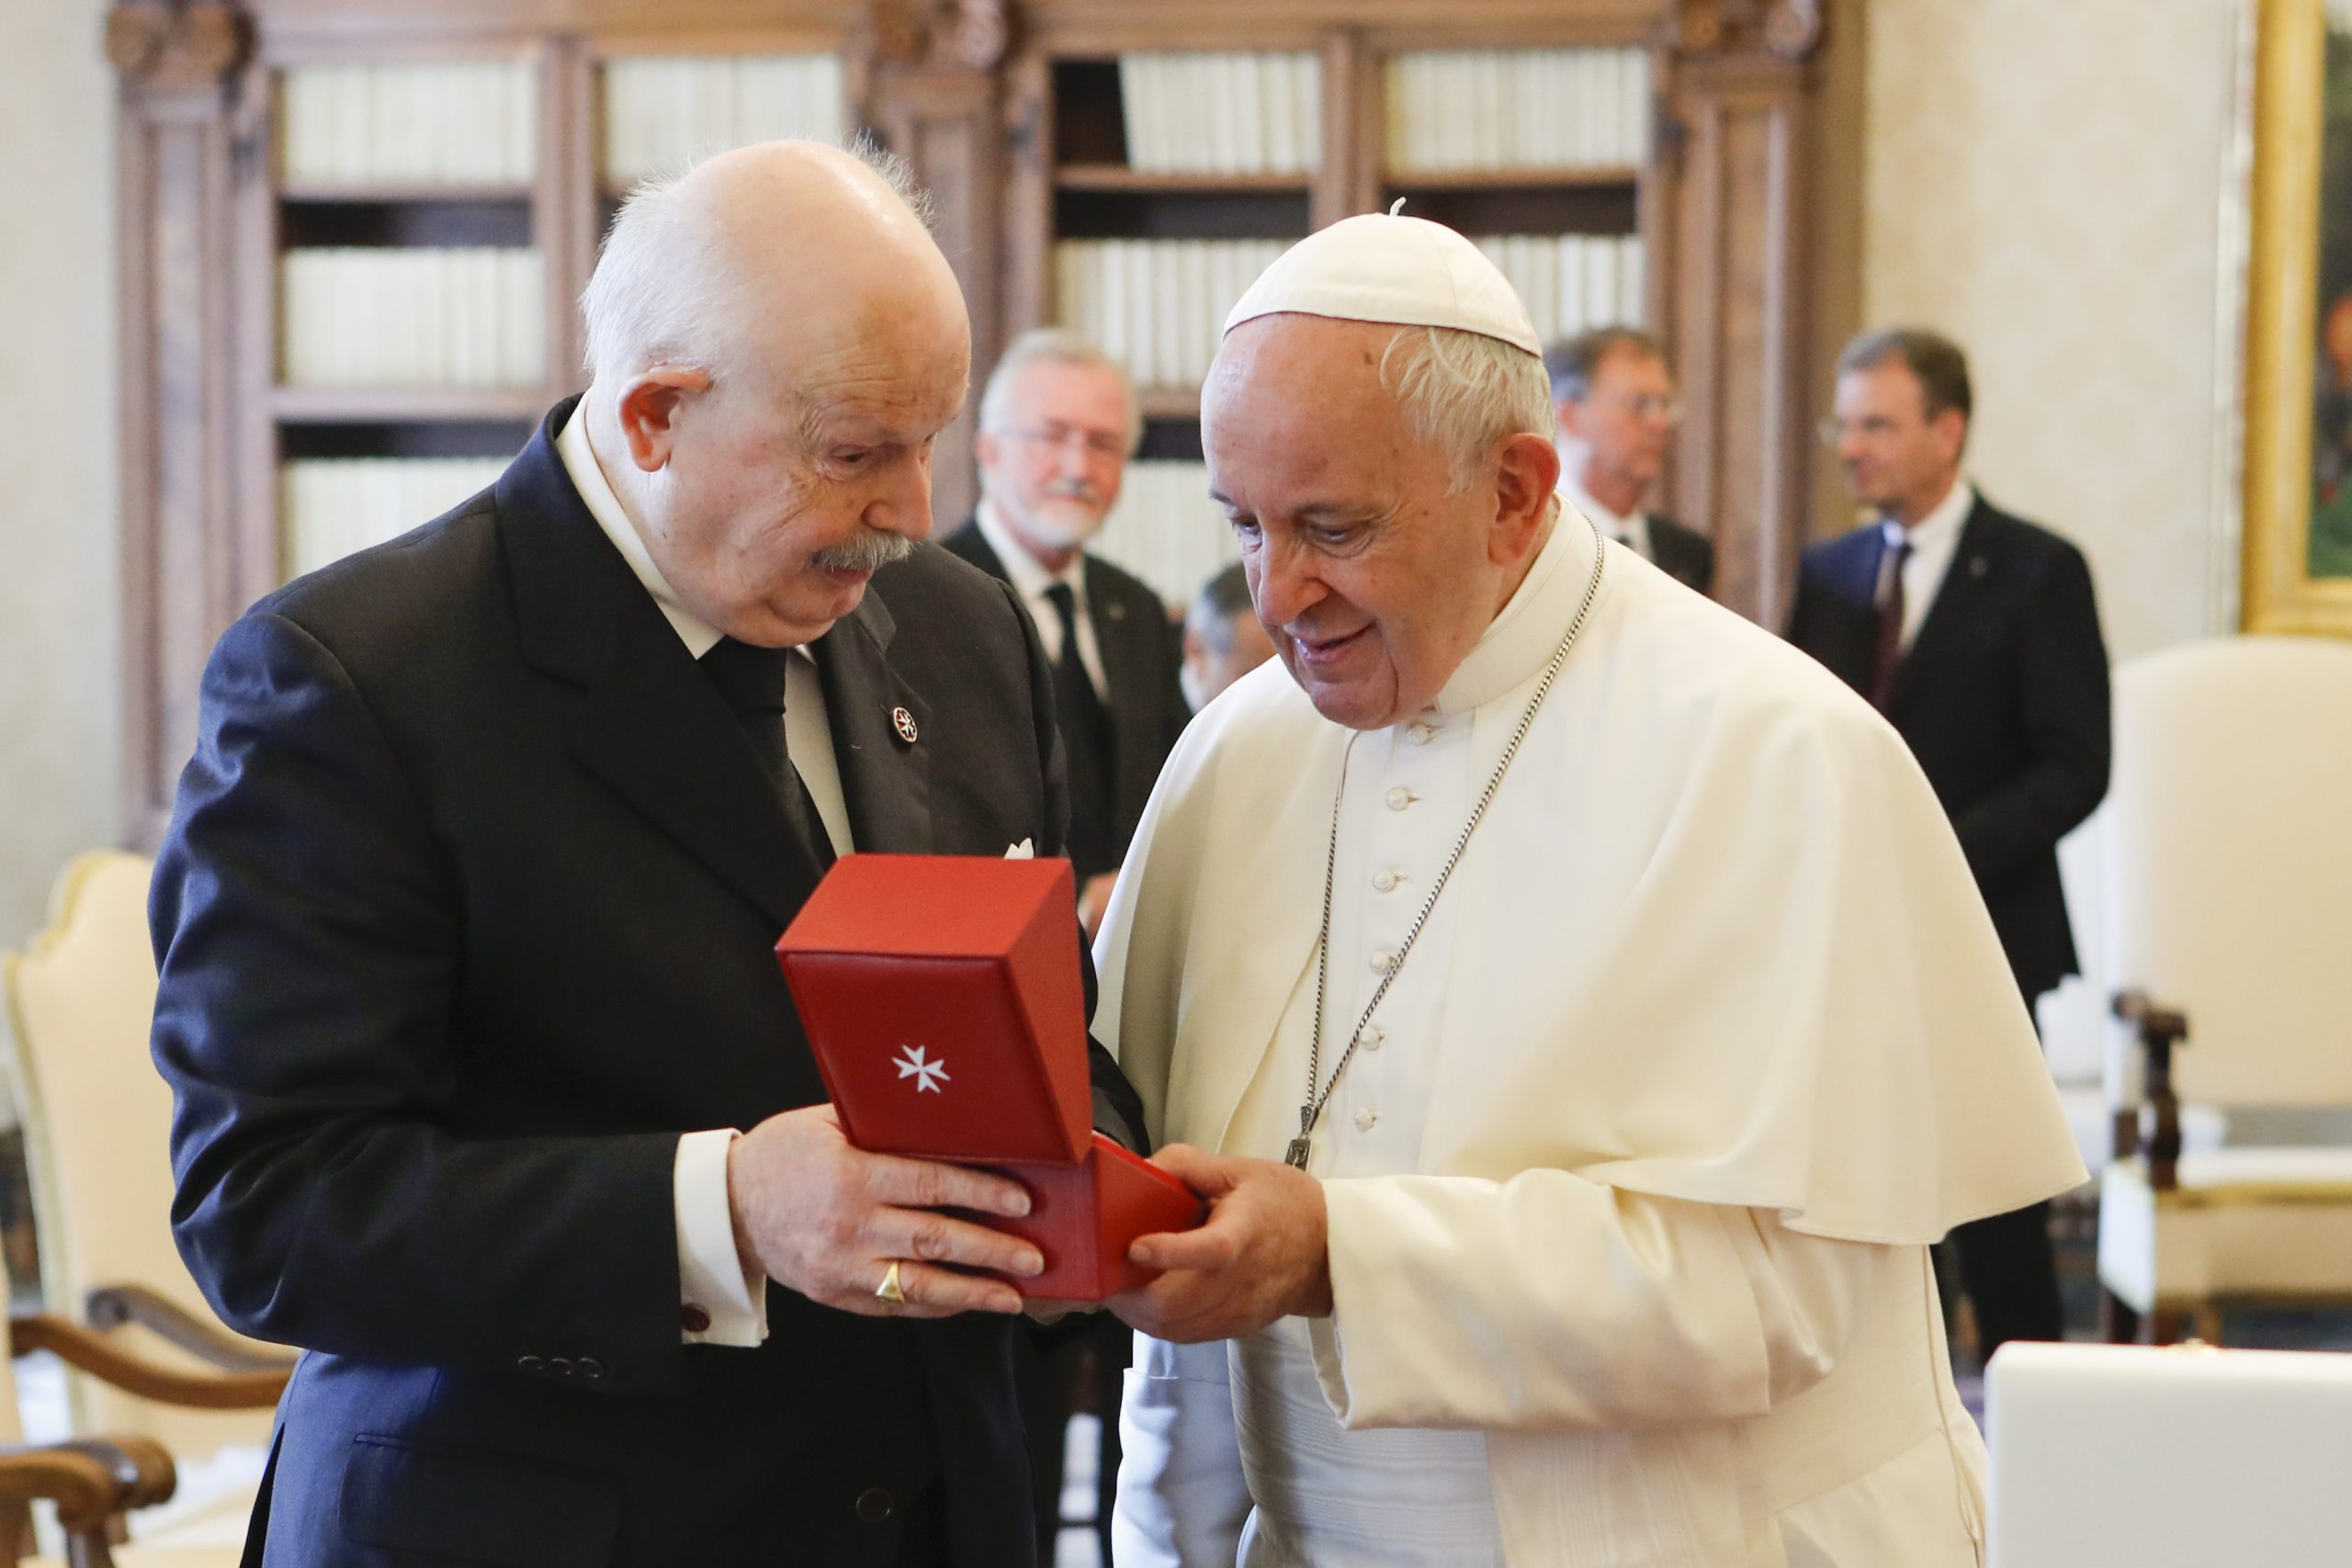 Papst Franziskus empfängt den Großmeister des Malteserordens. Große Aufmerksamkeit: Flüchtlingskrise